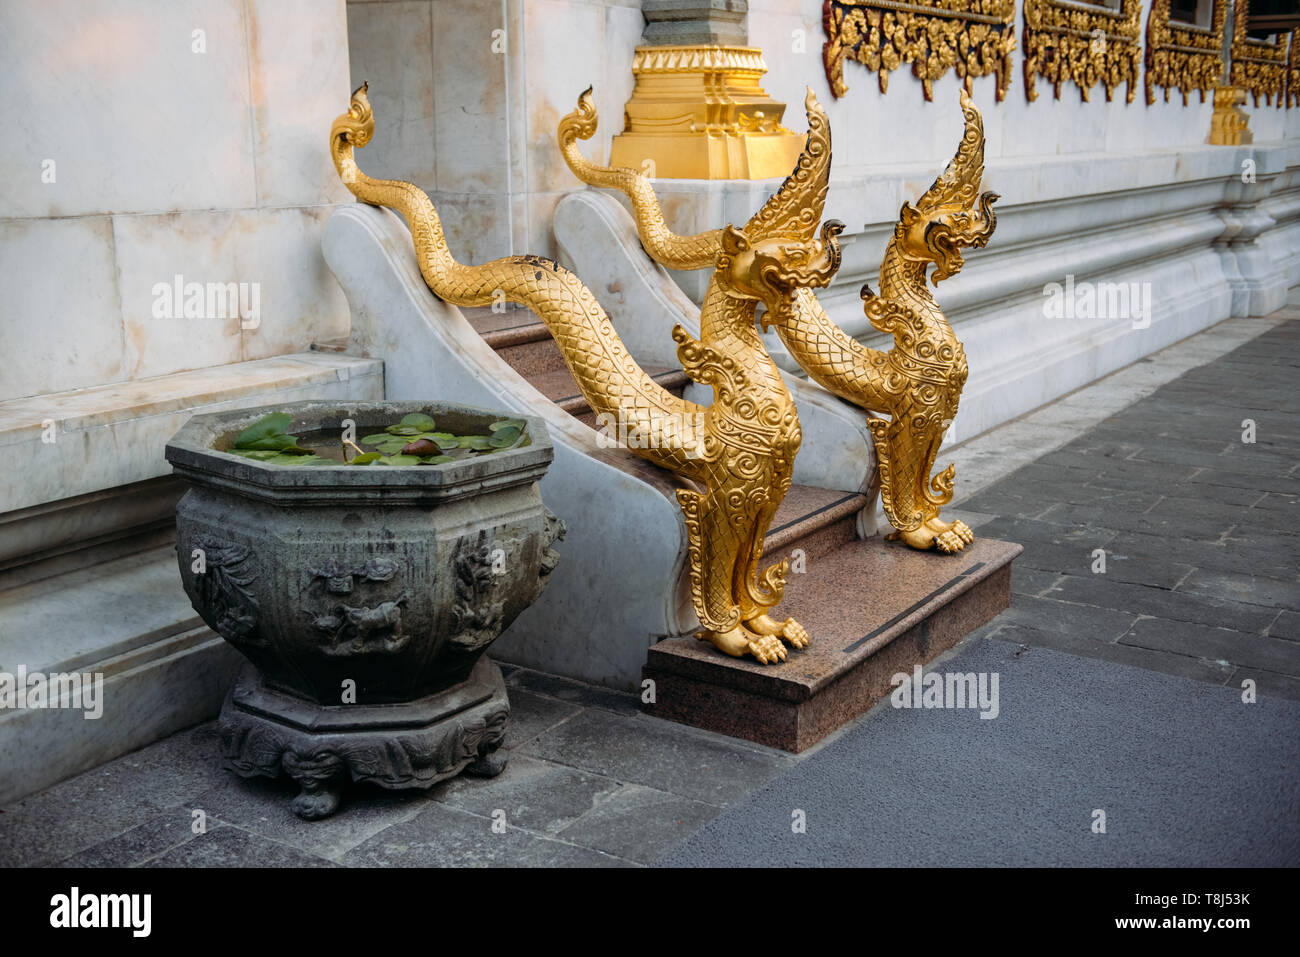 Close-up of dragon sculptures de l'entrée d'un temple, Bangkok, Thaïlande Banque D'Images